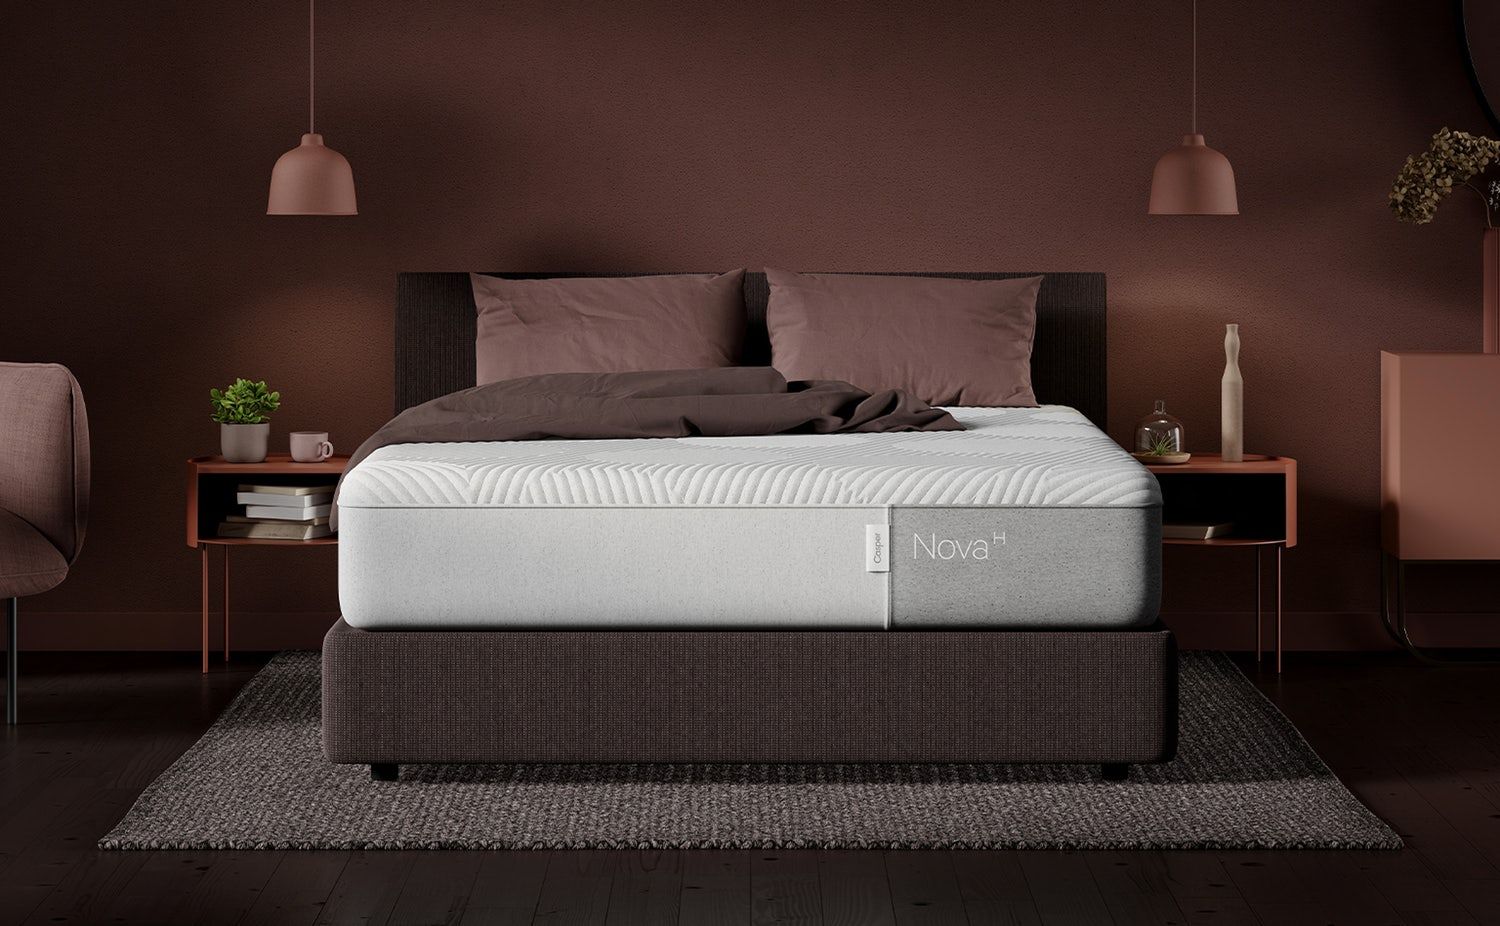 casper nova hybrid mattress